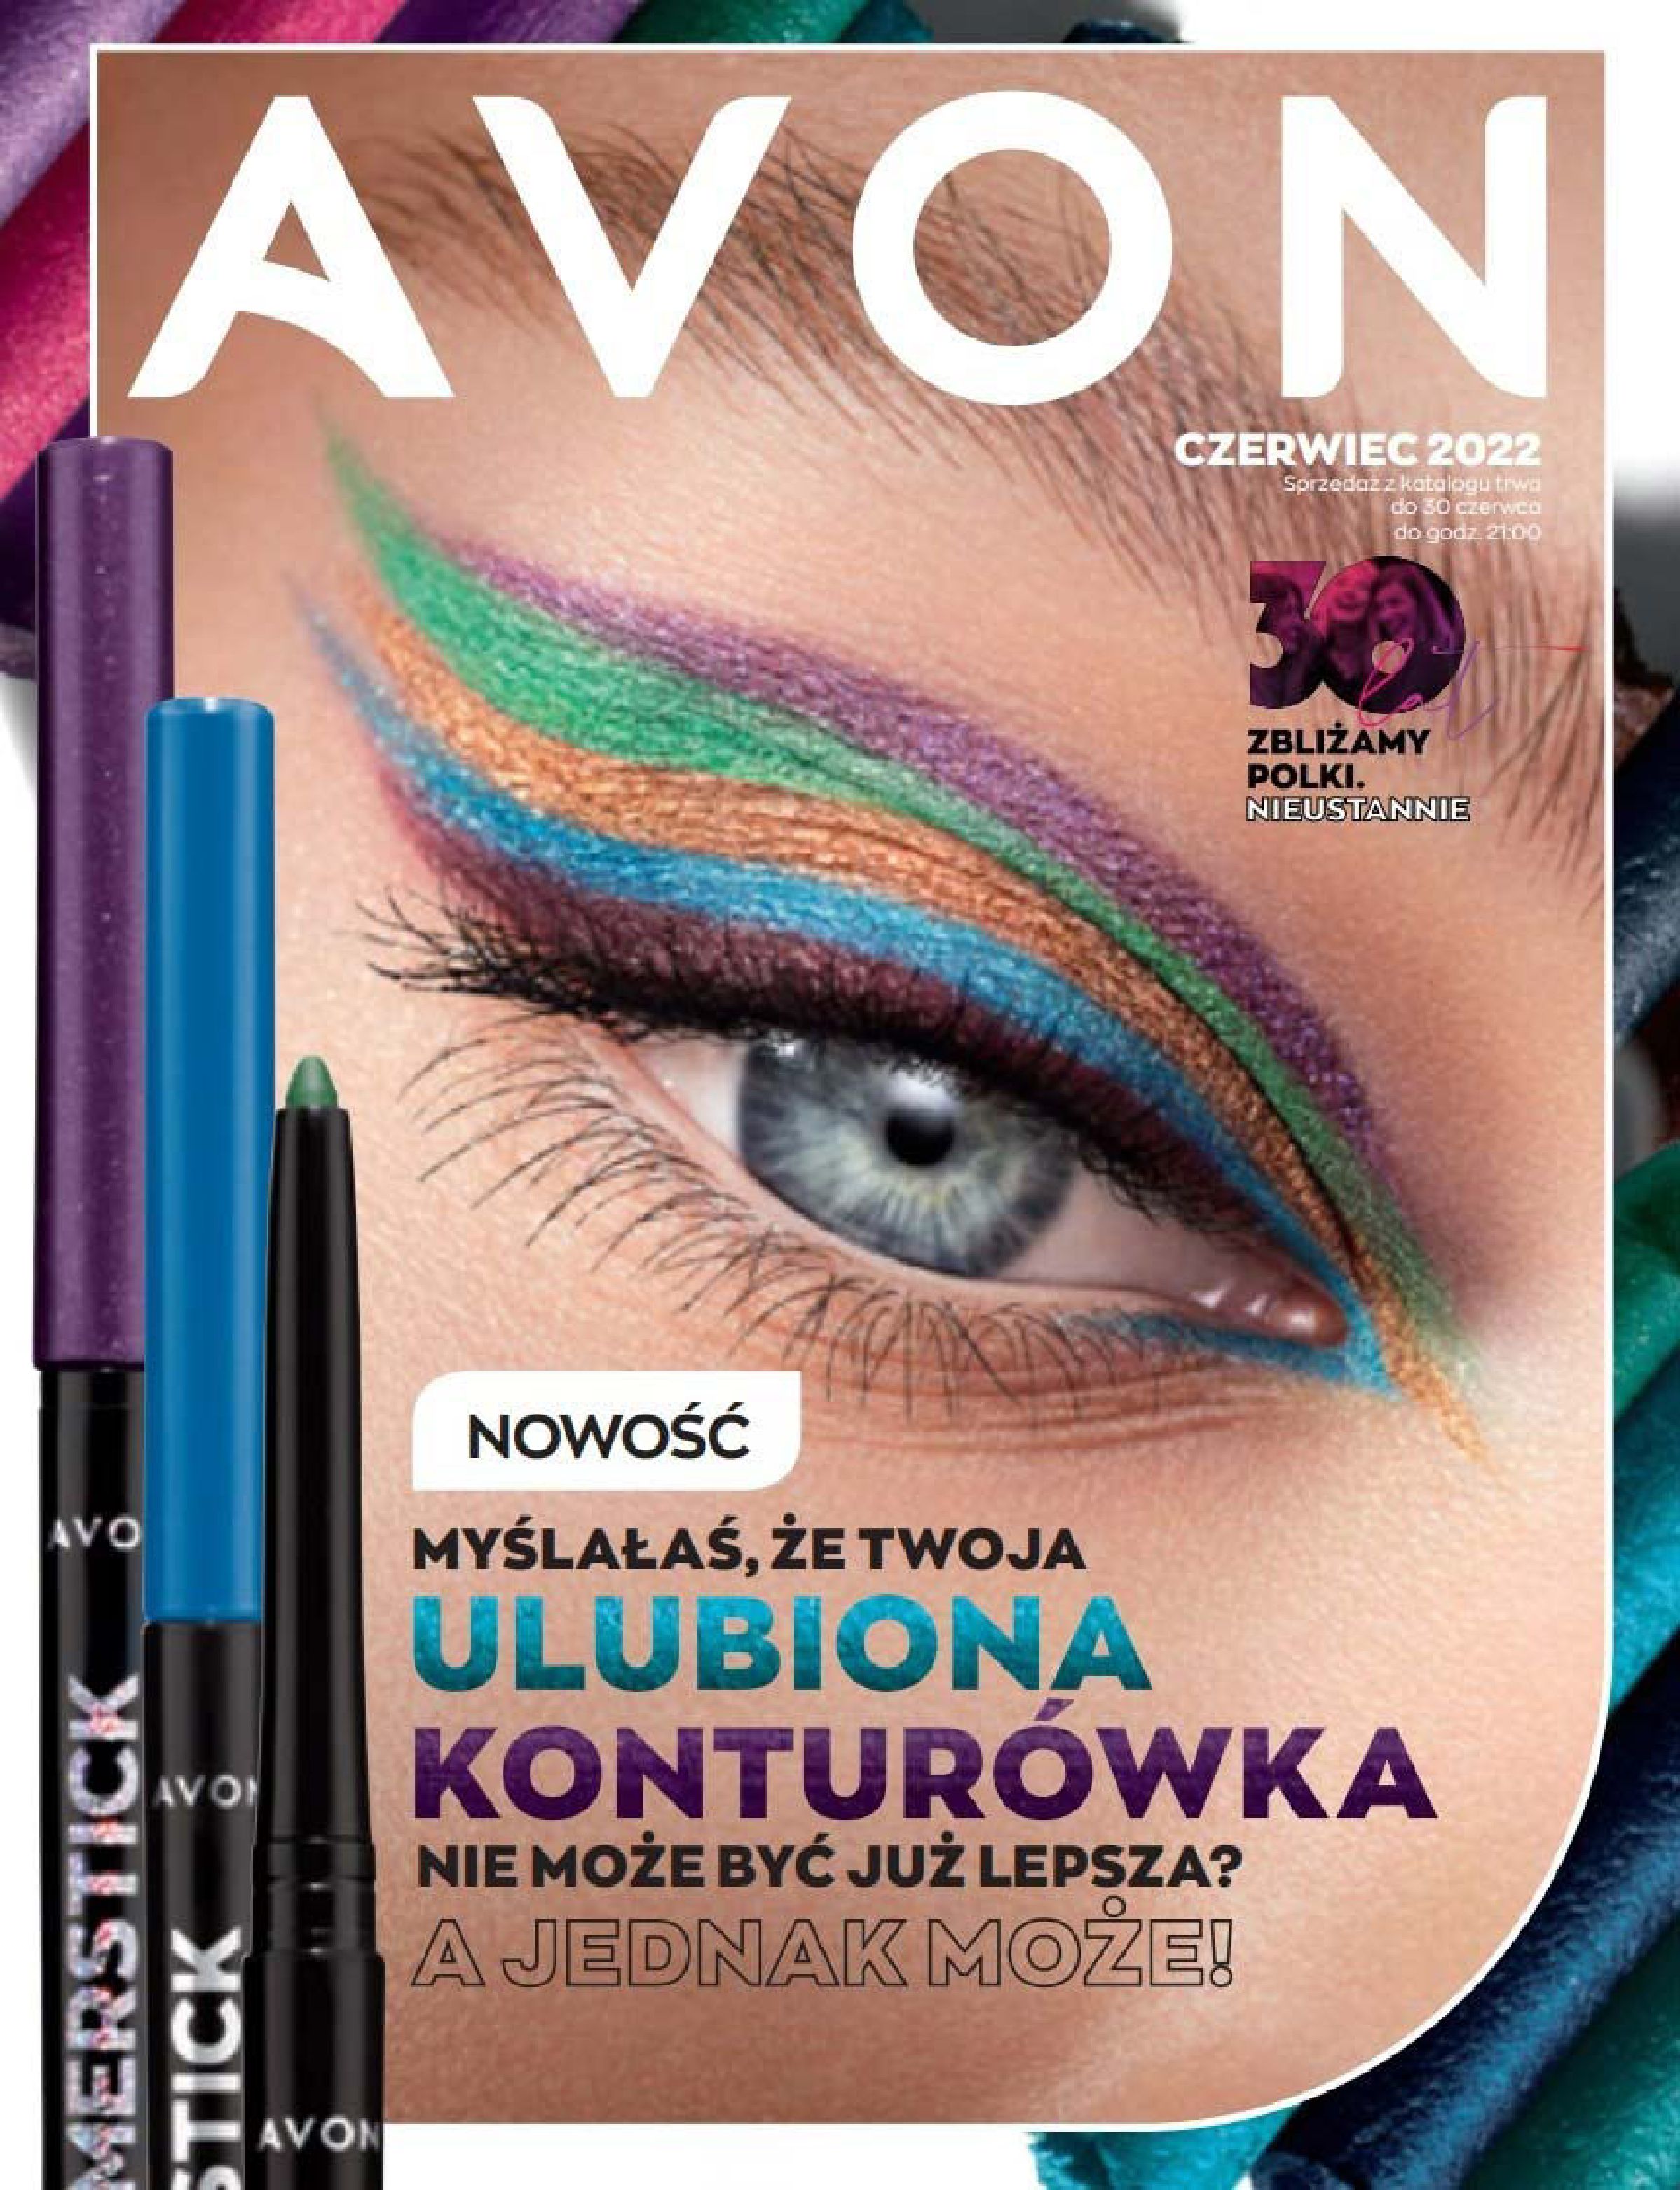 Avon:  Katalog Avon - Czerwiec 2022 15.04.2022